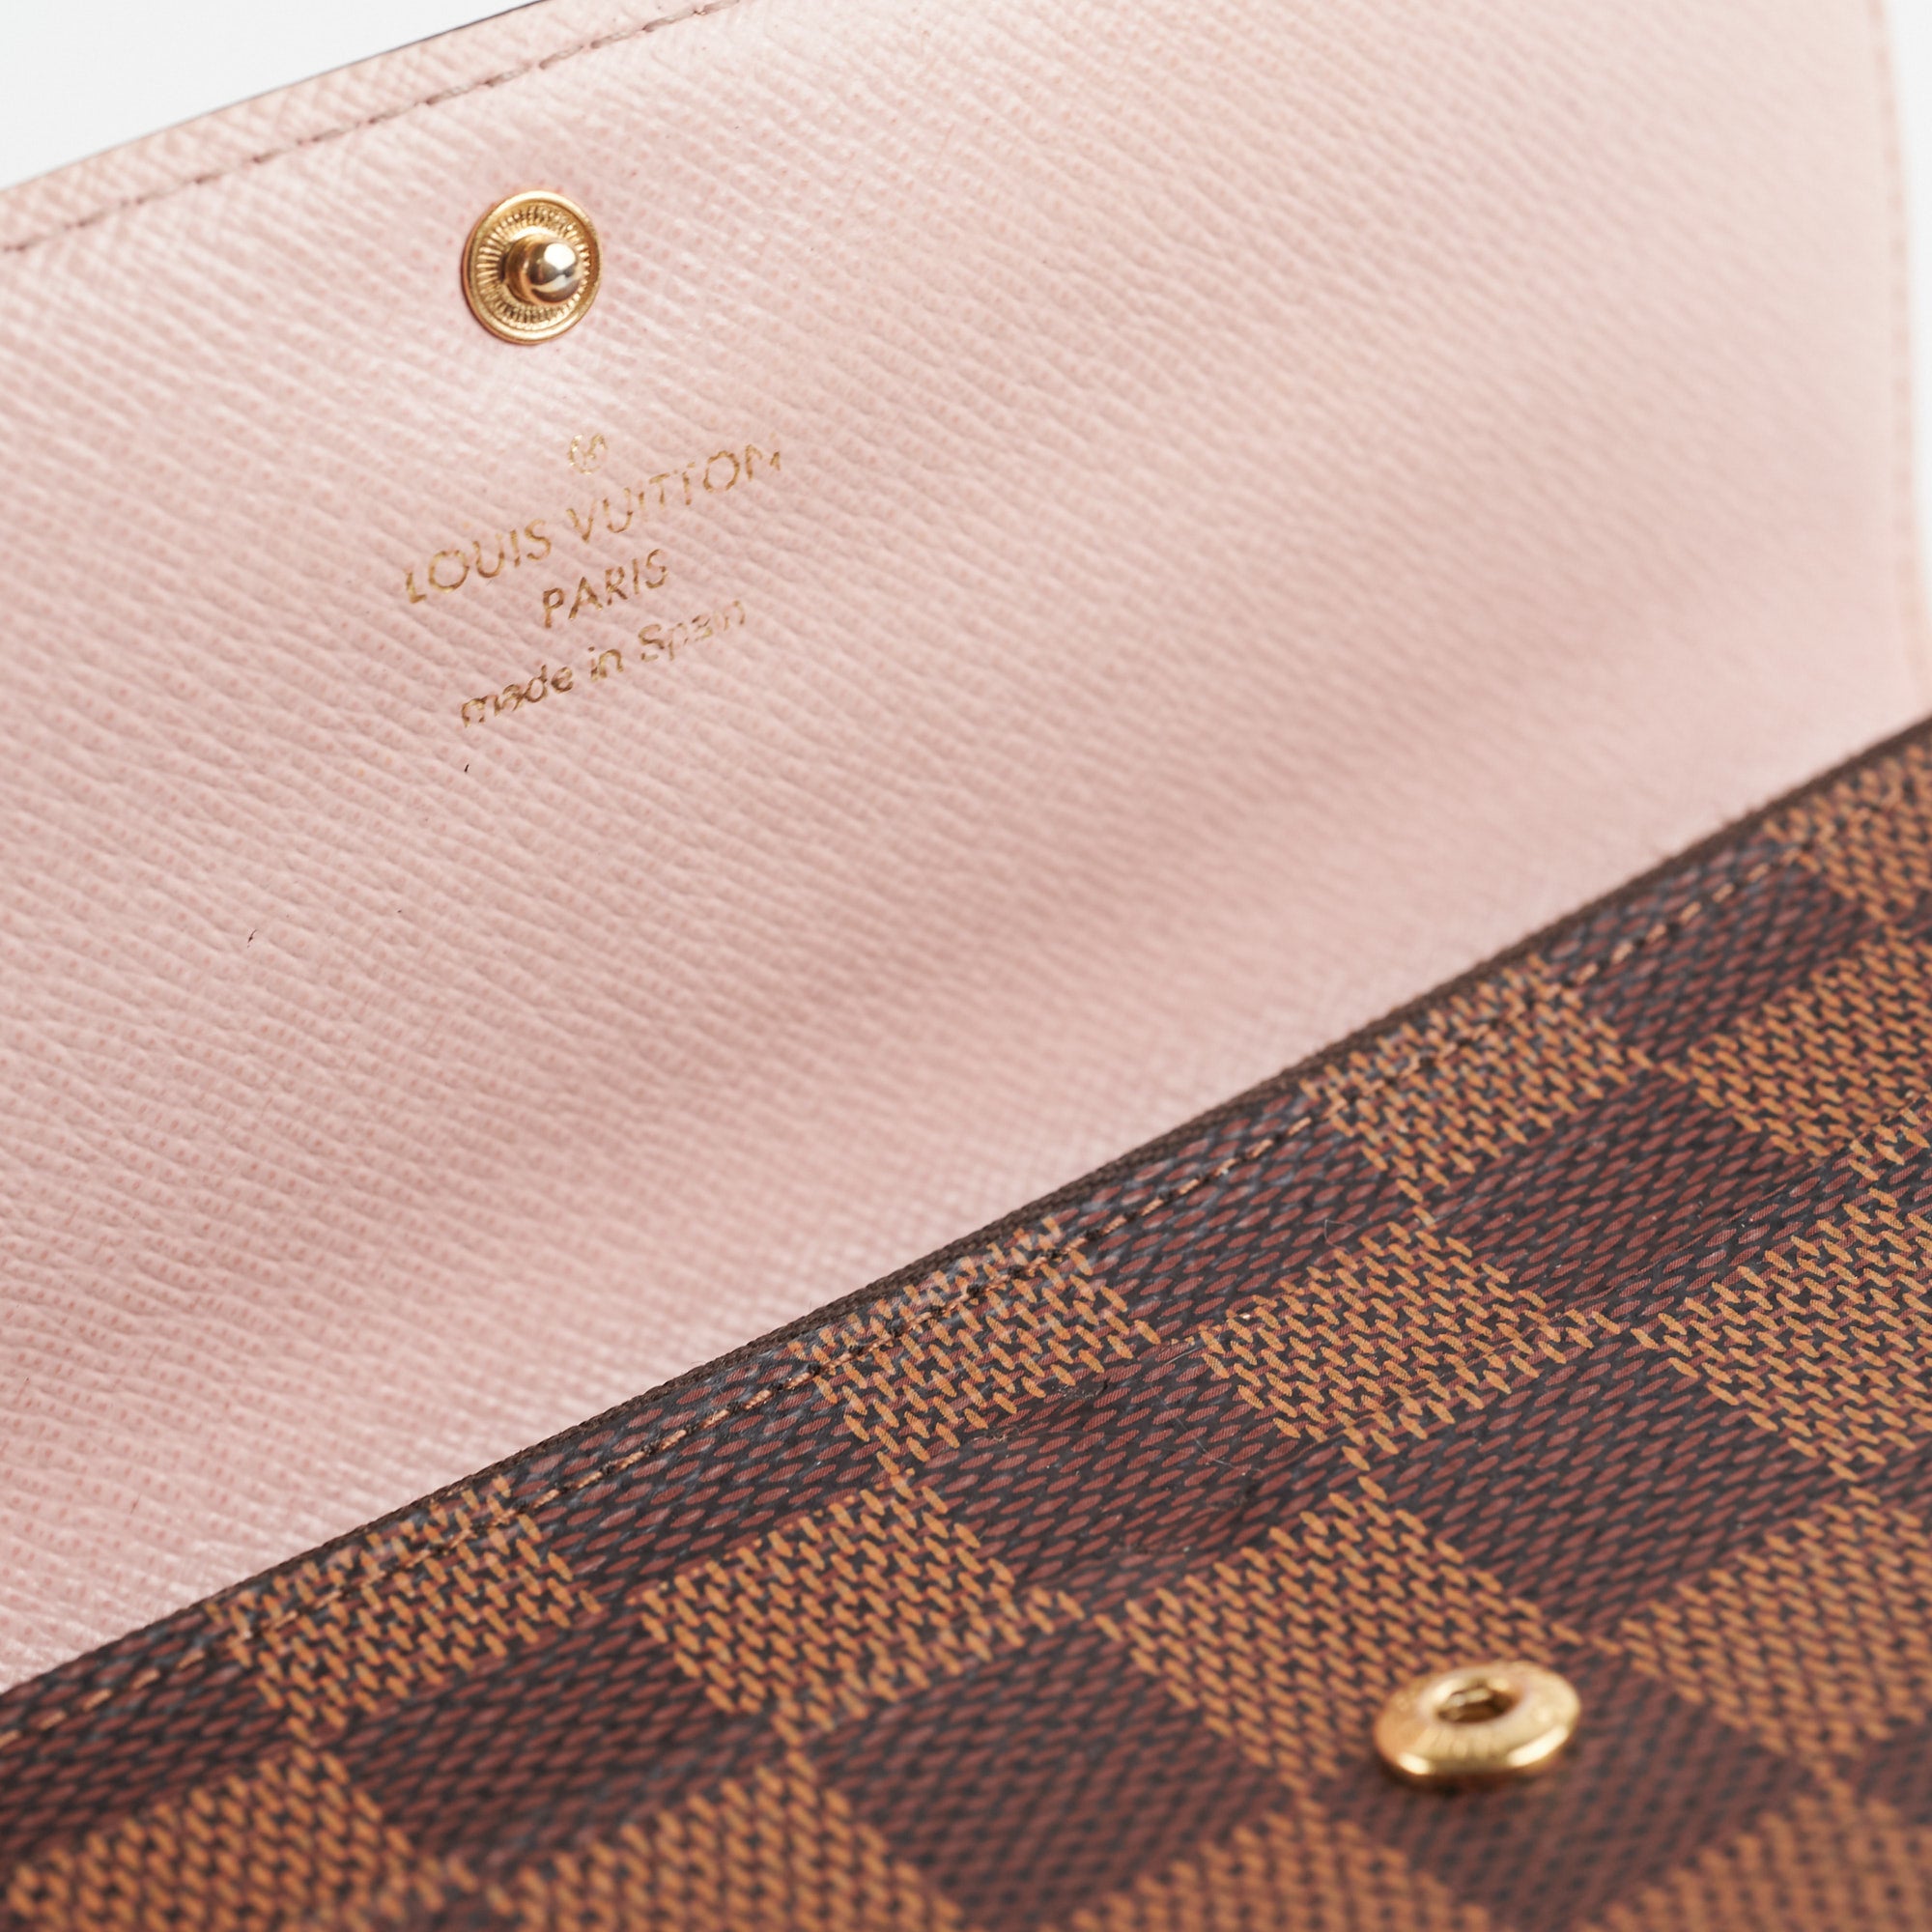 Louis Vuitton emilie wallet damier ebene – Lady Clara's Collection